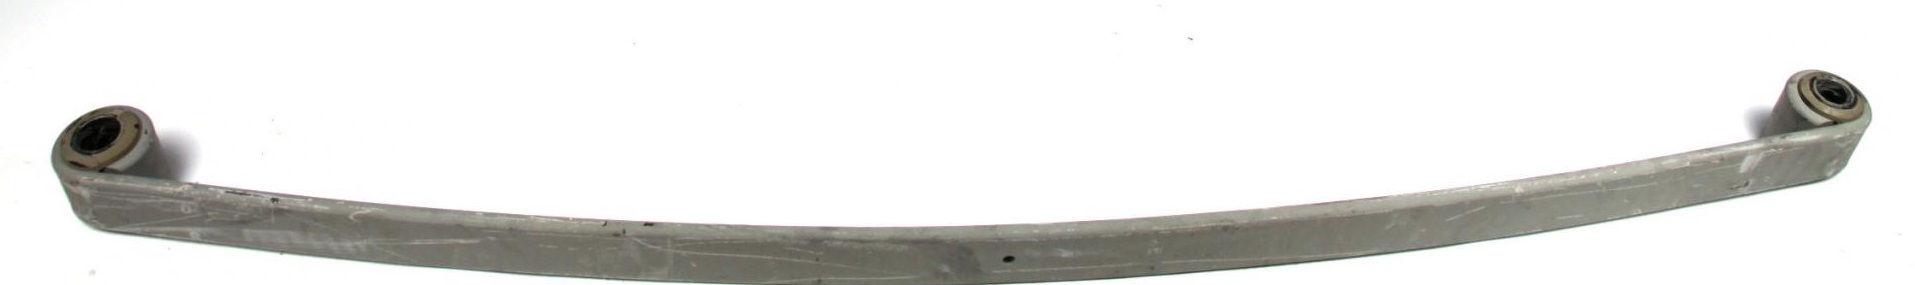 Рессора задняя коренная MB Vario (70/790/790), 14.50mm